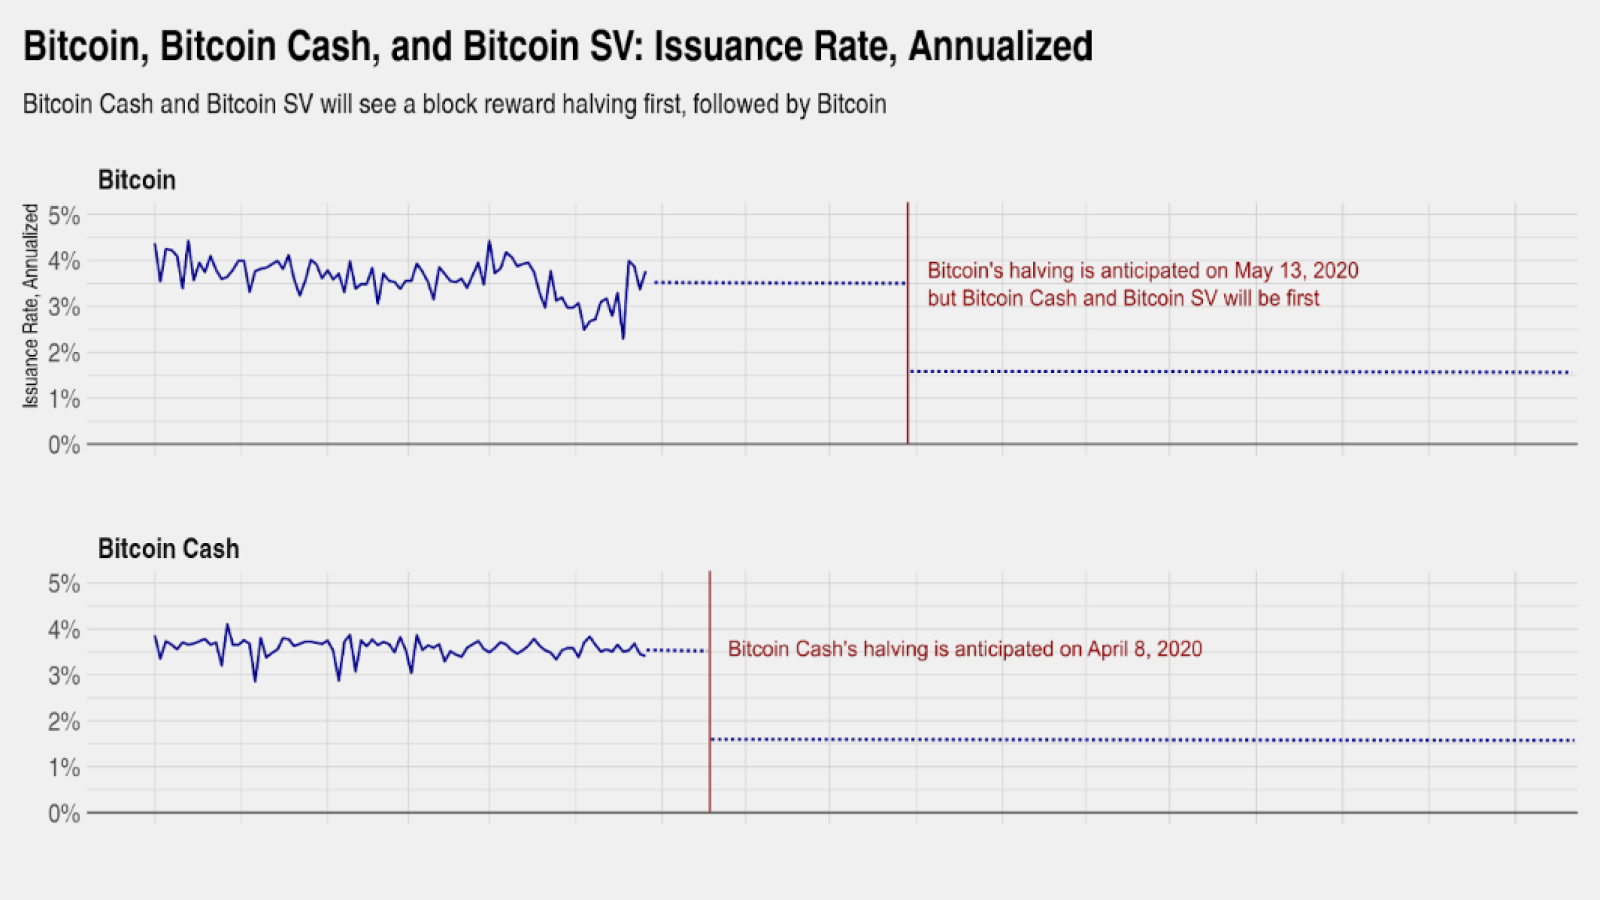 Bitcoin Cash, Bitcoin SV 